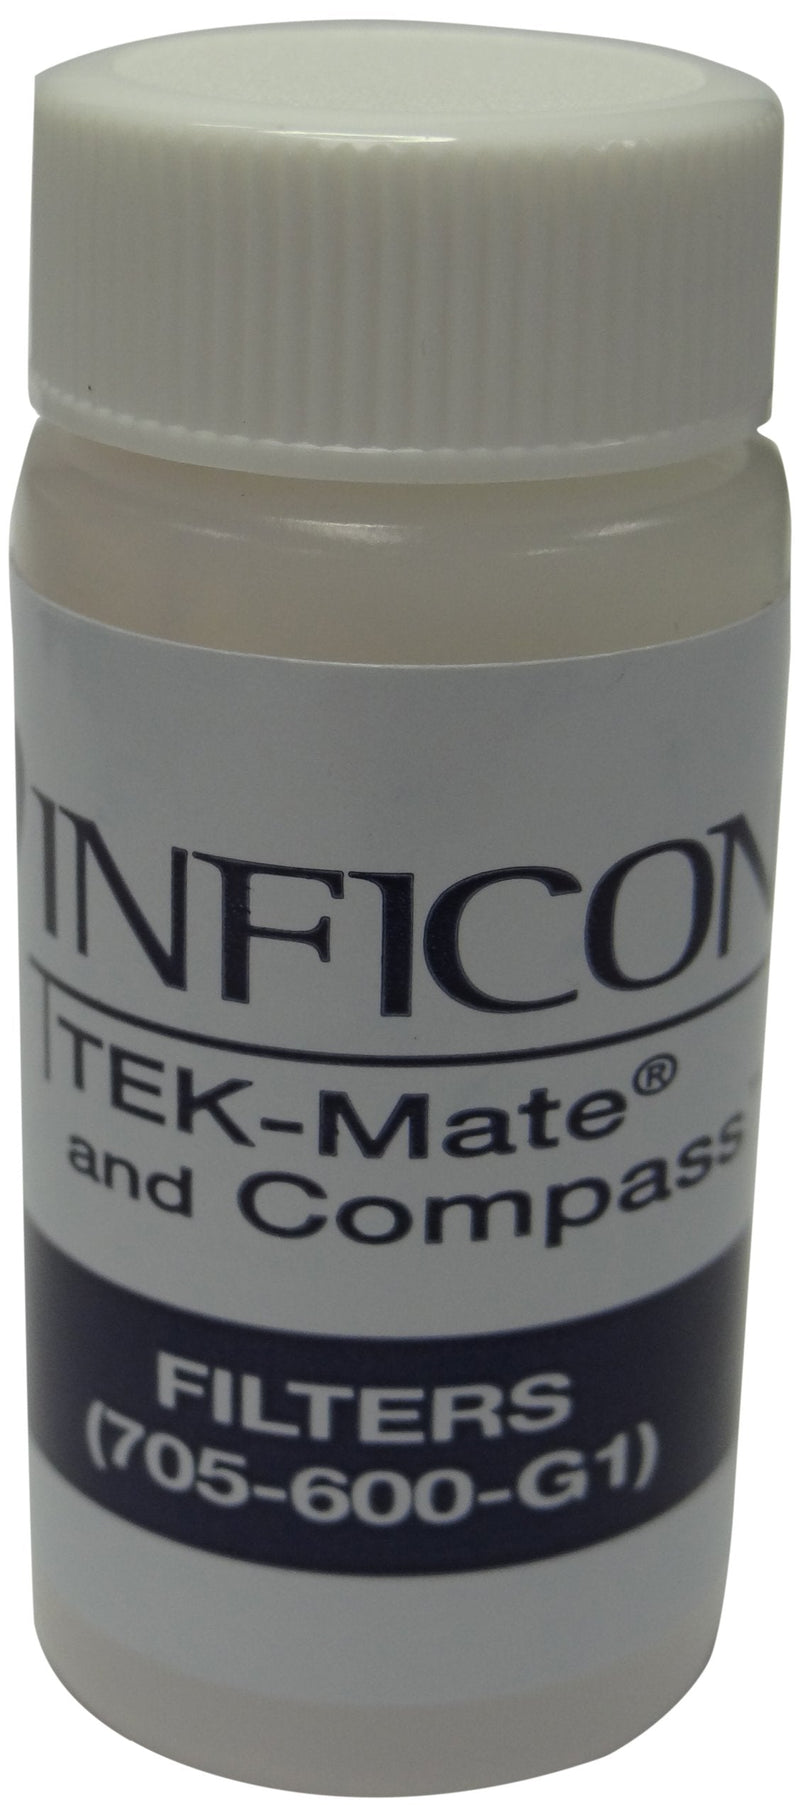 [Australia - AusPower] - INFICON 705-600-G1 Filter Kit for TEK-Mate Refrigerant Leak Detector 